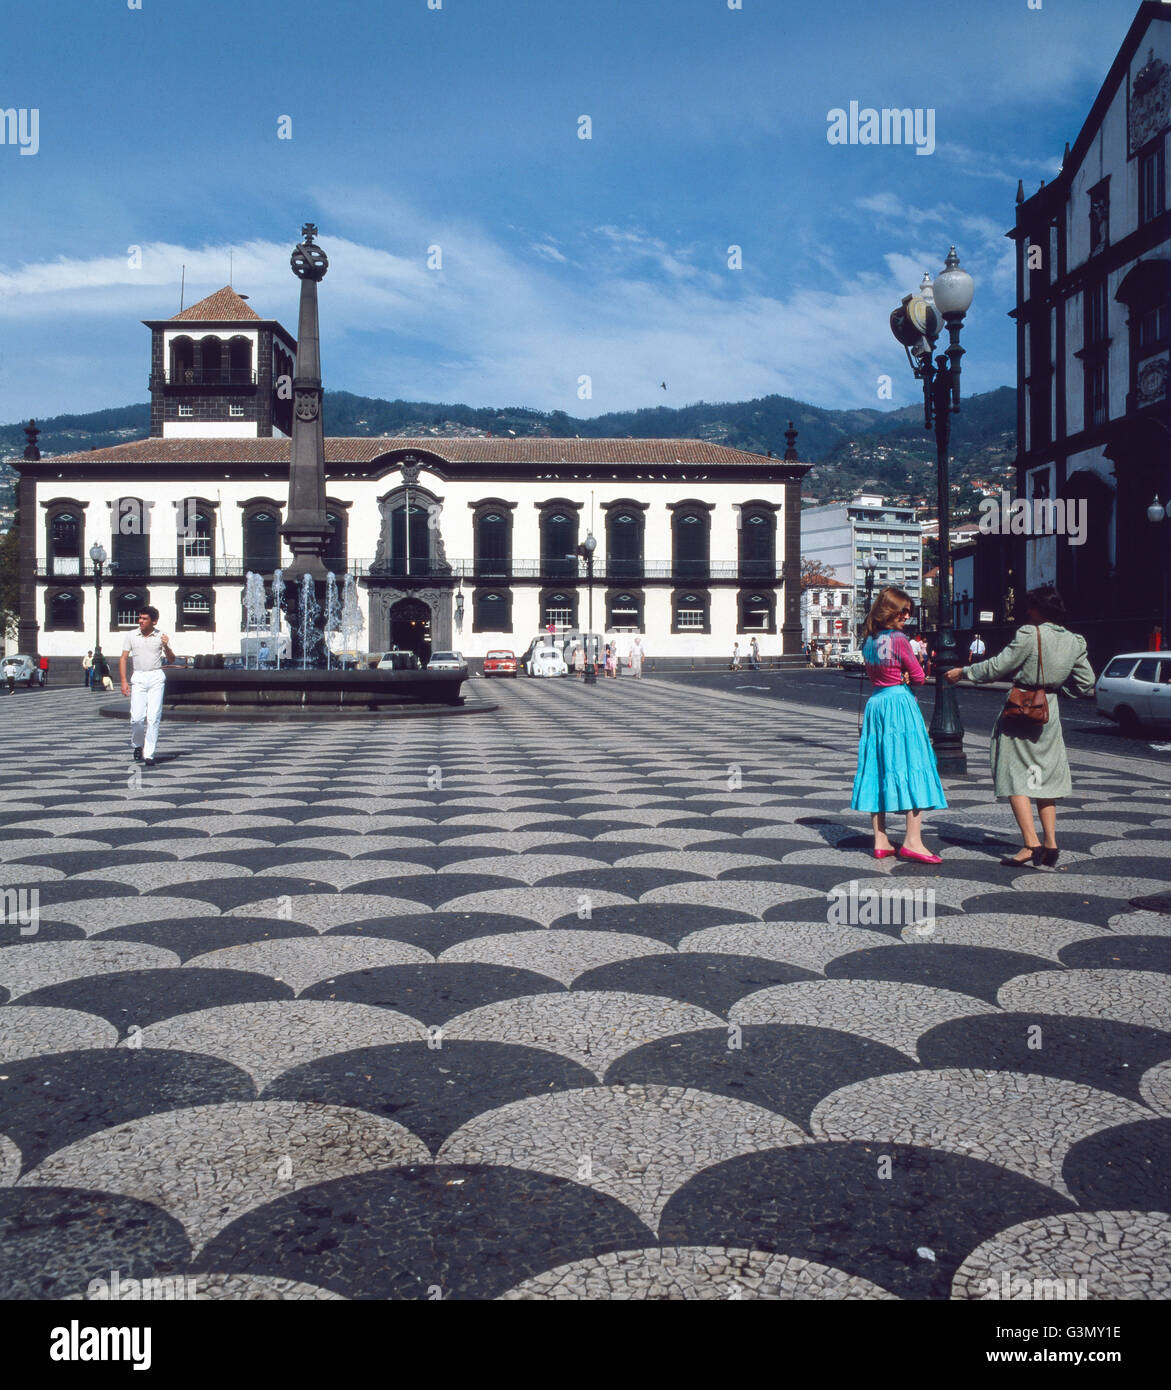 Der Rathausplatz Câmara Municipal do Funchal, Madeira, Portugal 1980. The town hall square Câmara Municipal do Funchal, Madeira, Portugal 1980. Stock Photo